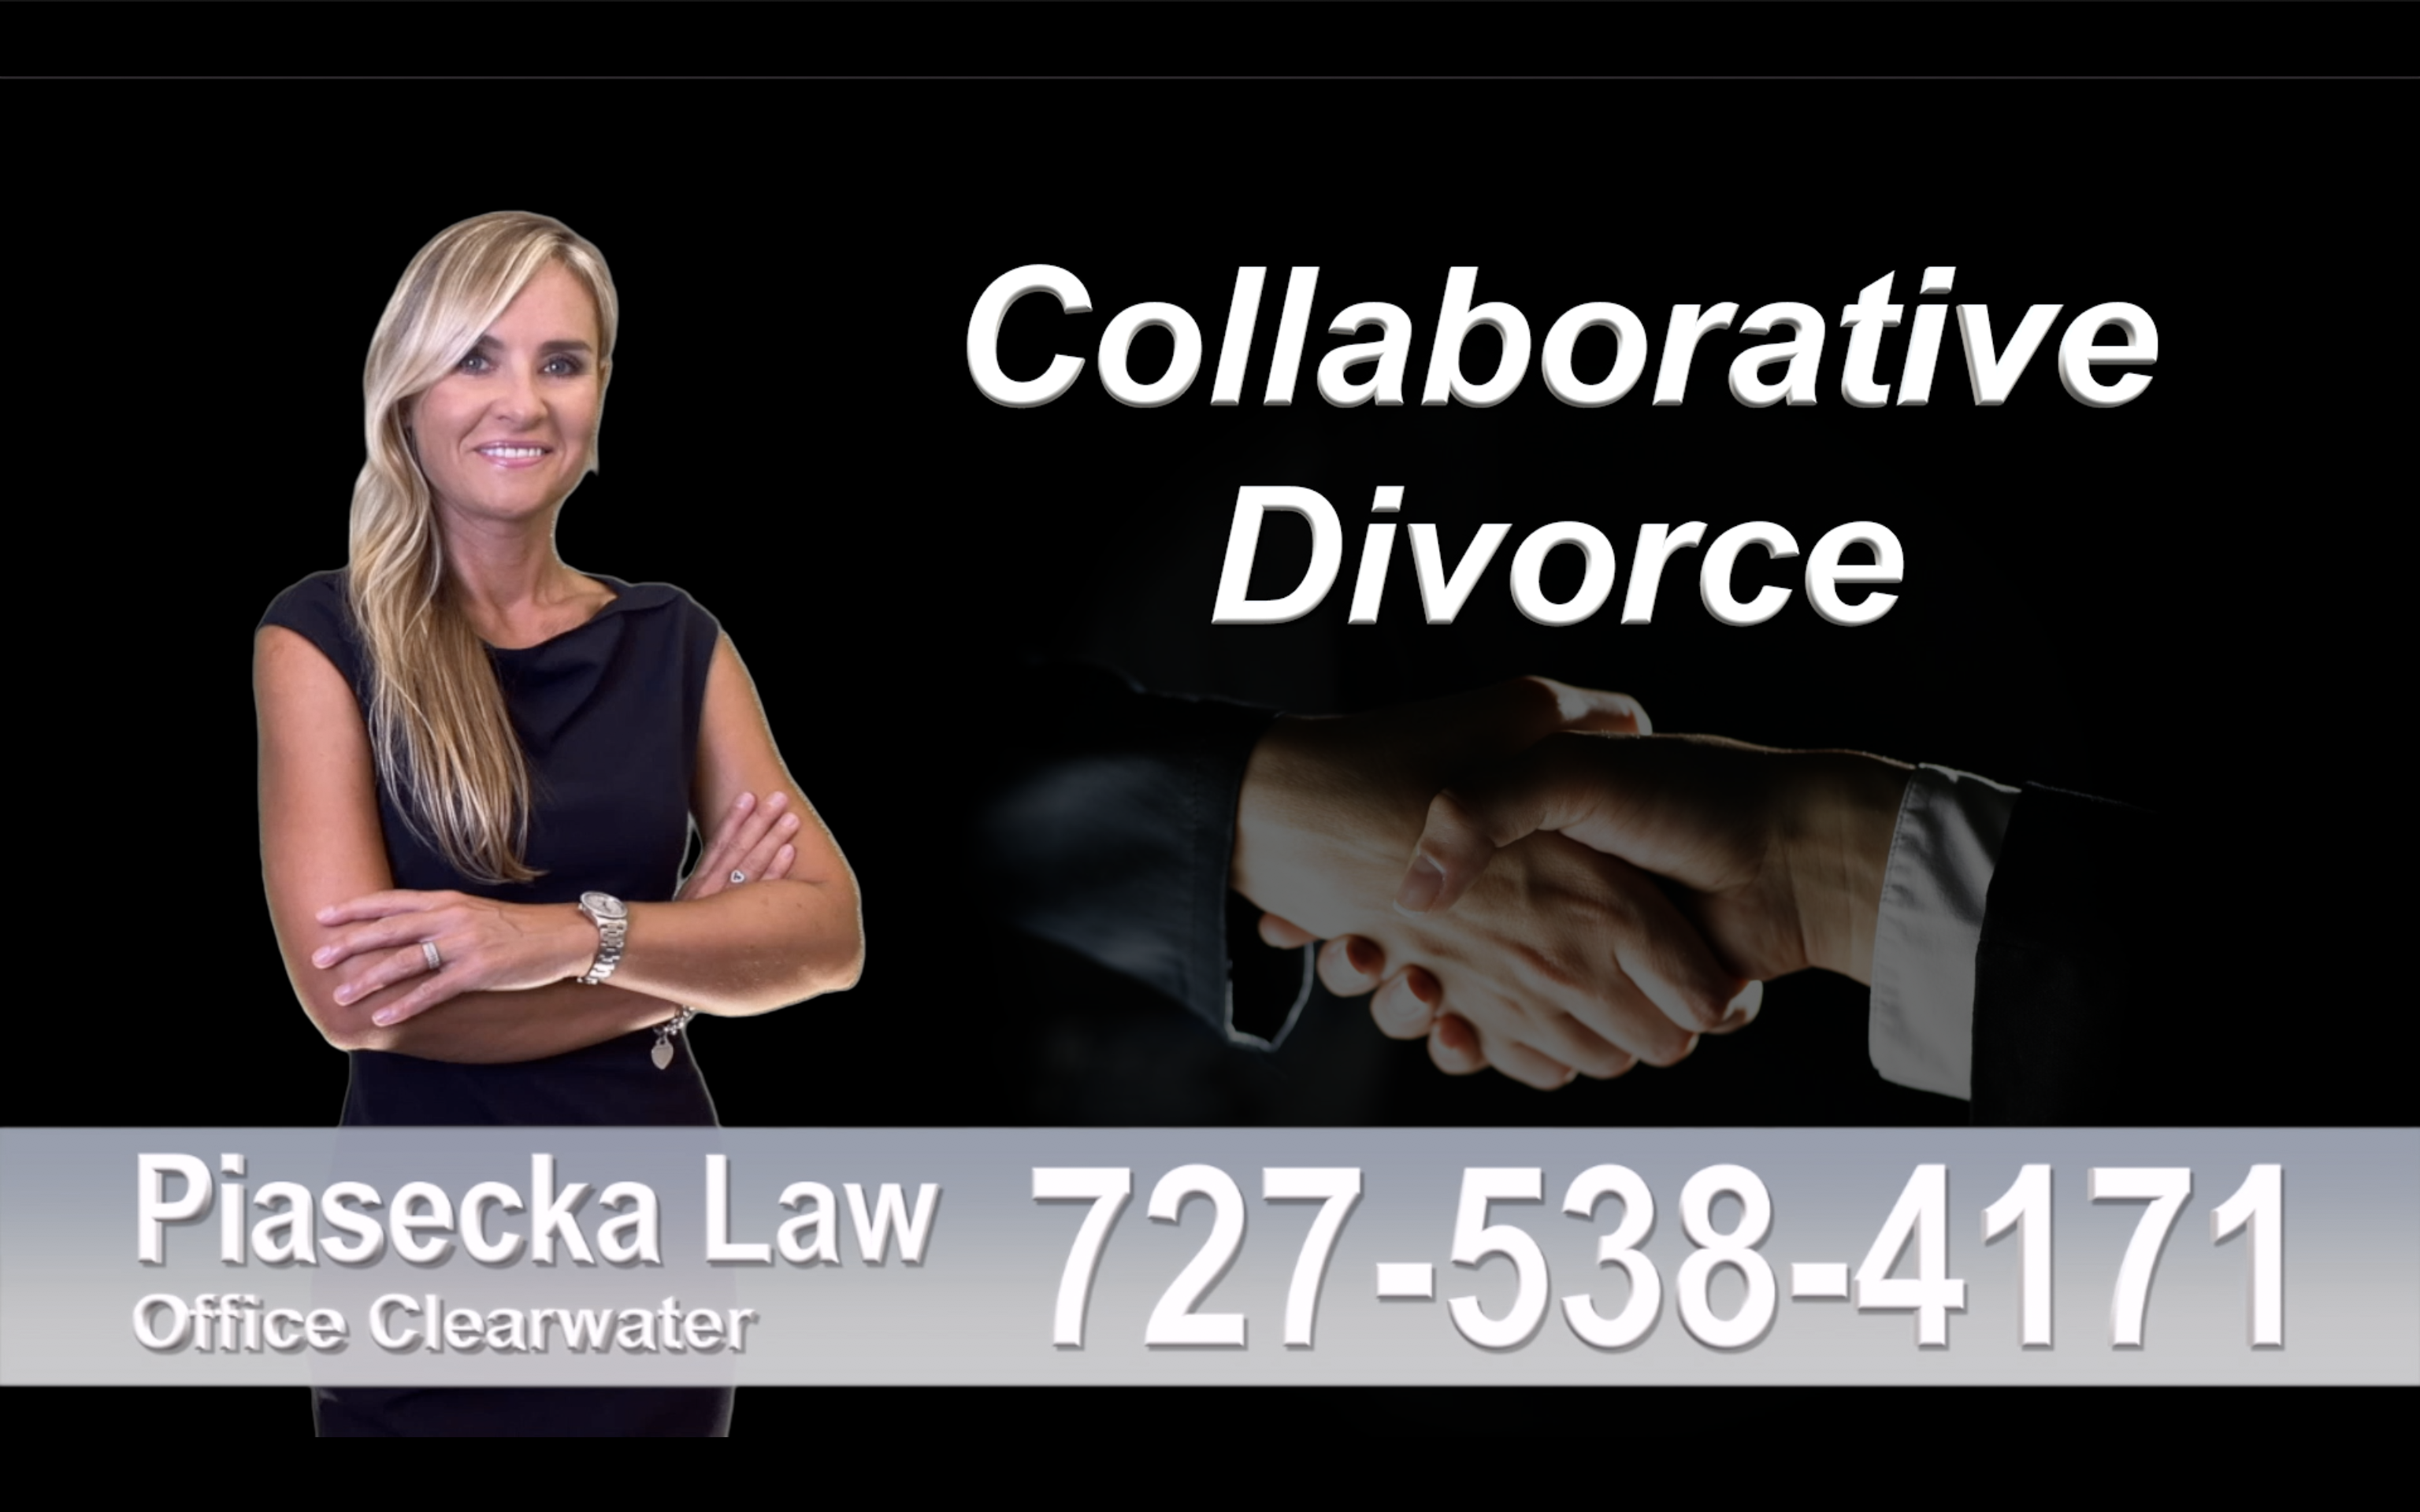 Gibsonton Collaborative, Divorce, Attorney, Agnieszka, Piasecka, Prawnik, Rozwodowy, Rozwód, Adwokat, rozwodowy, Najlepszy, Best, Collaborative, Divorce, Attorney, Family,